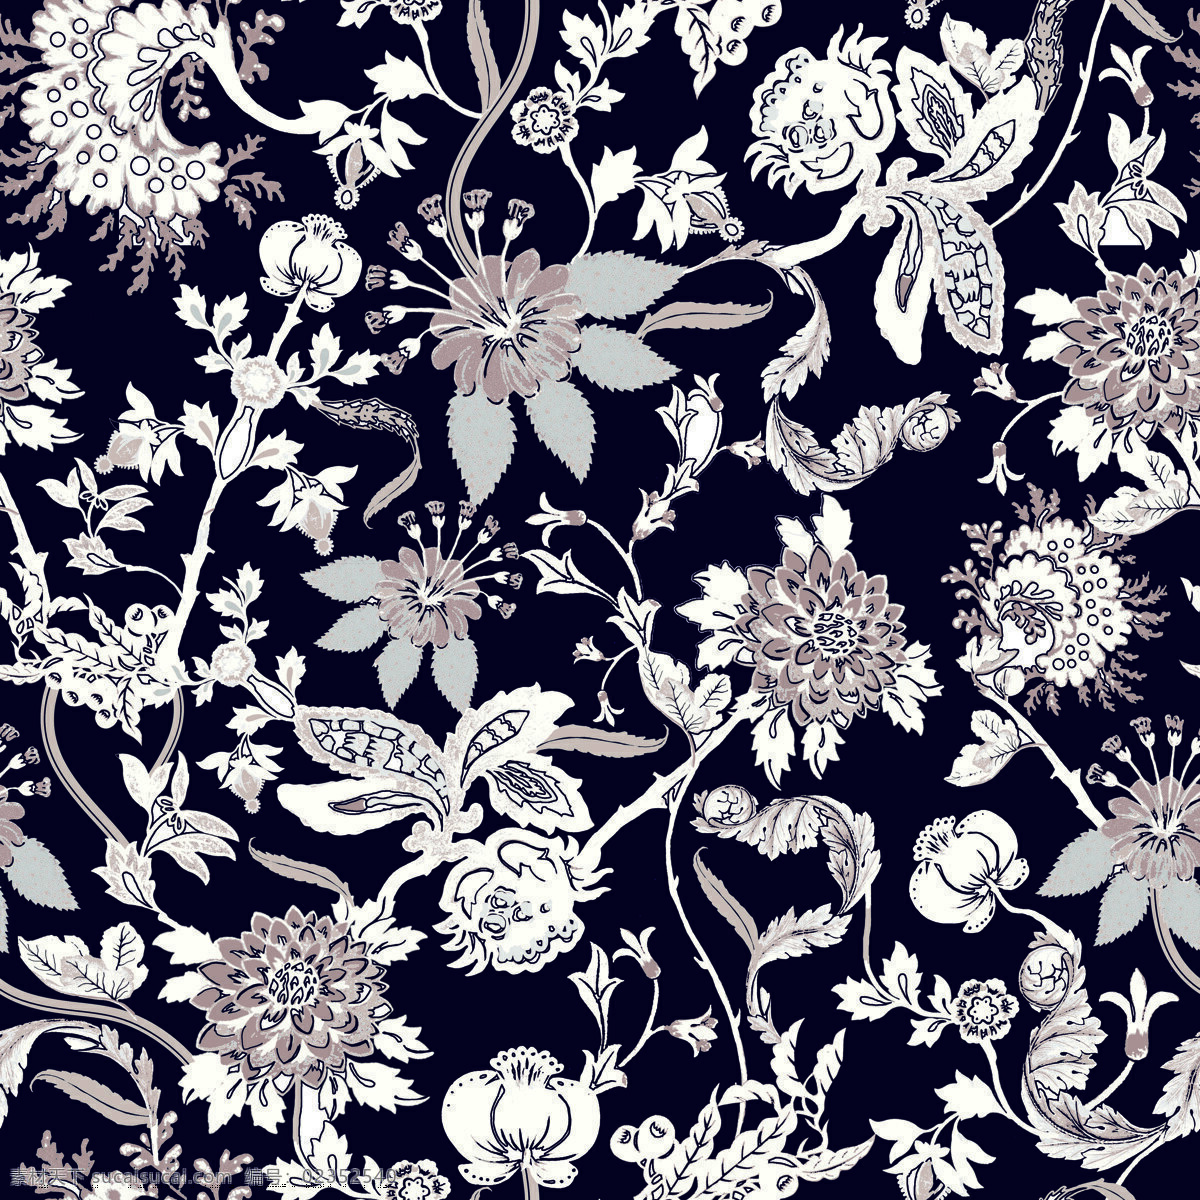 矢量花卉图案 单色花 花卉 花朵 印花 壁纸 地毯 背景图案 装饰图案 花卉花纹 底纹边框 花边花纹